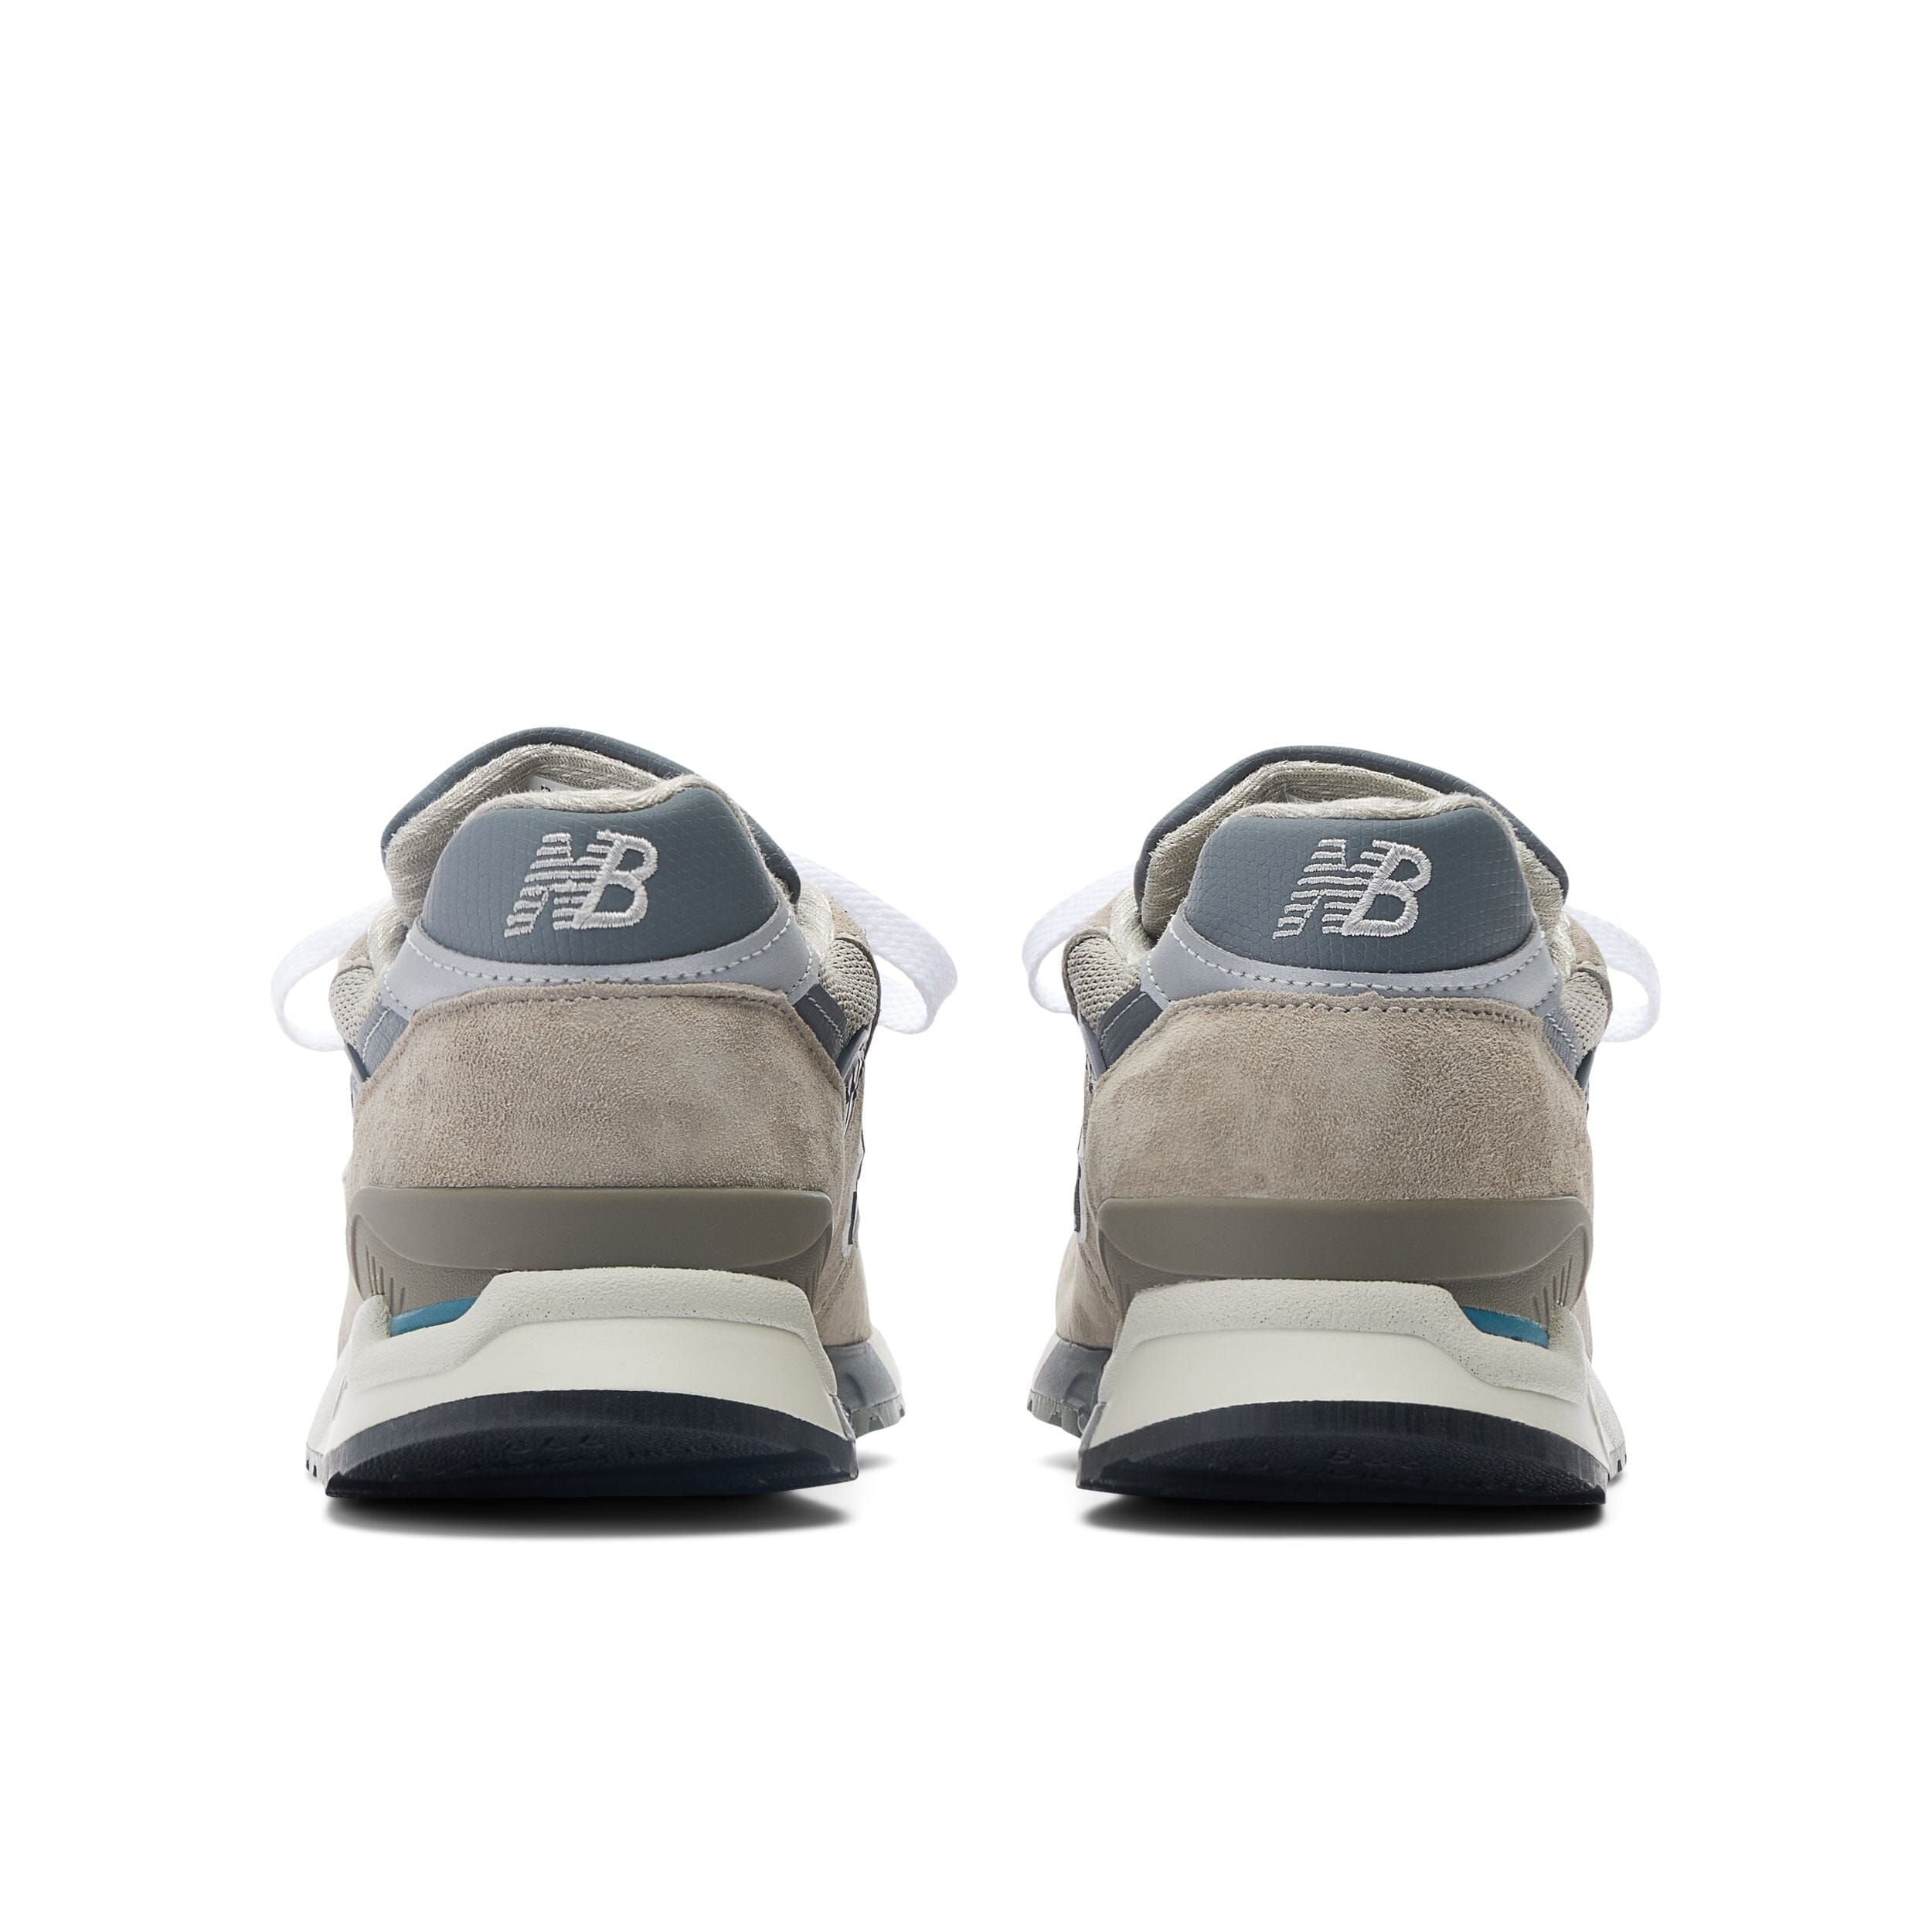 NEW BALANCE - Sneakers U998GR - Grigio Scarpe Donna NEW BALANCE - Collezione Donna 